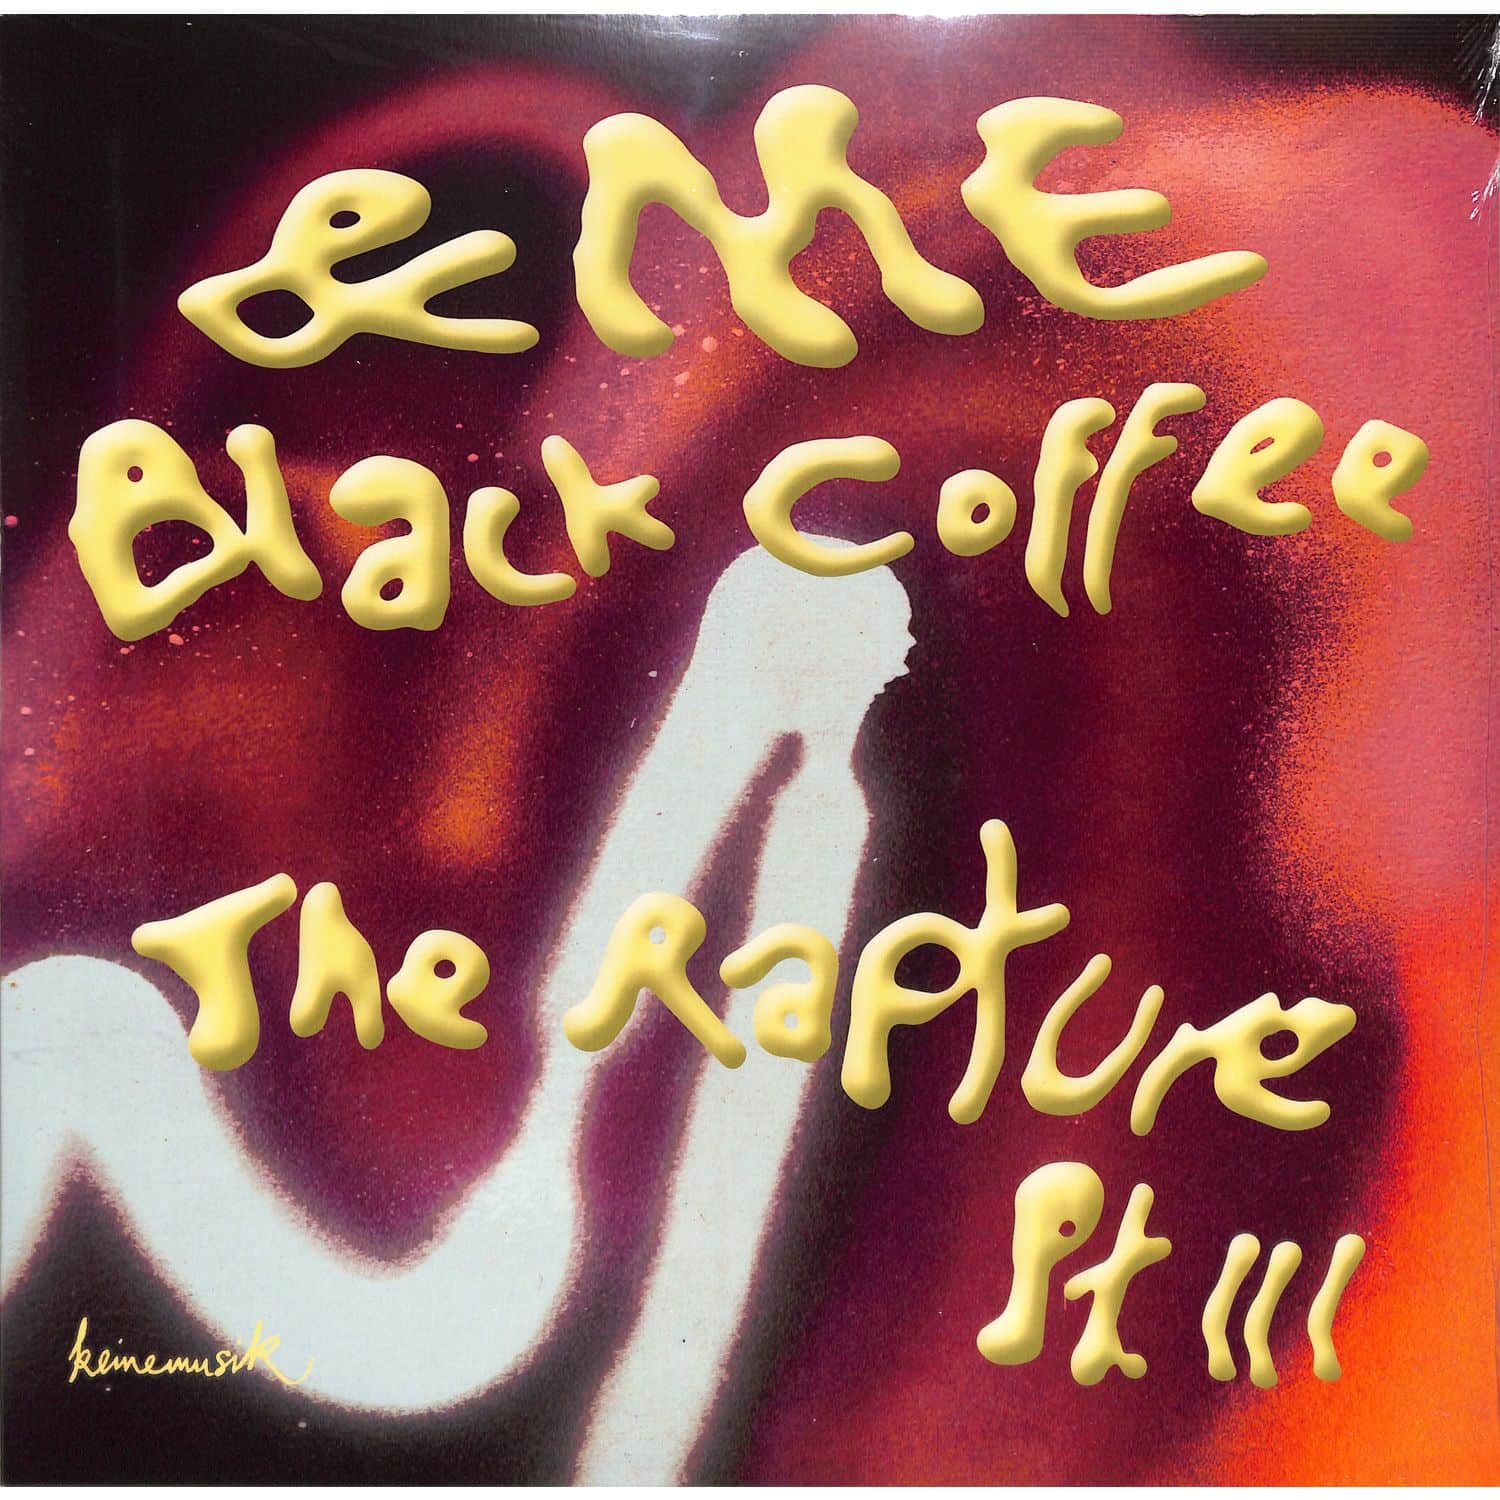 &ME / Black Coffee - THE RAPTURE PT.III